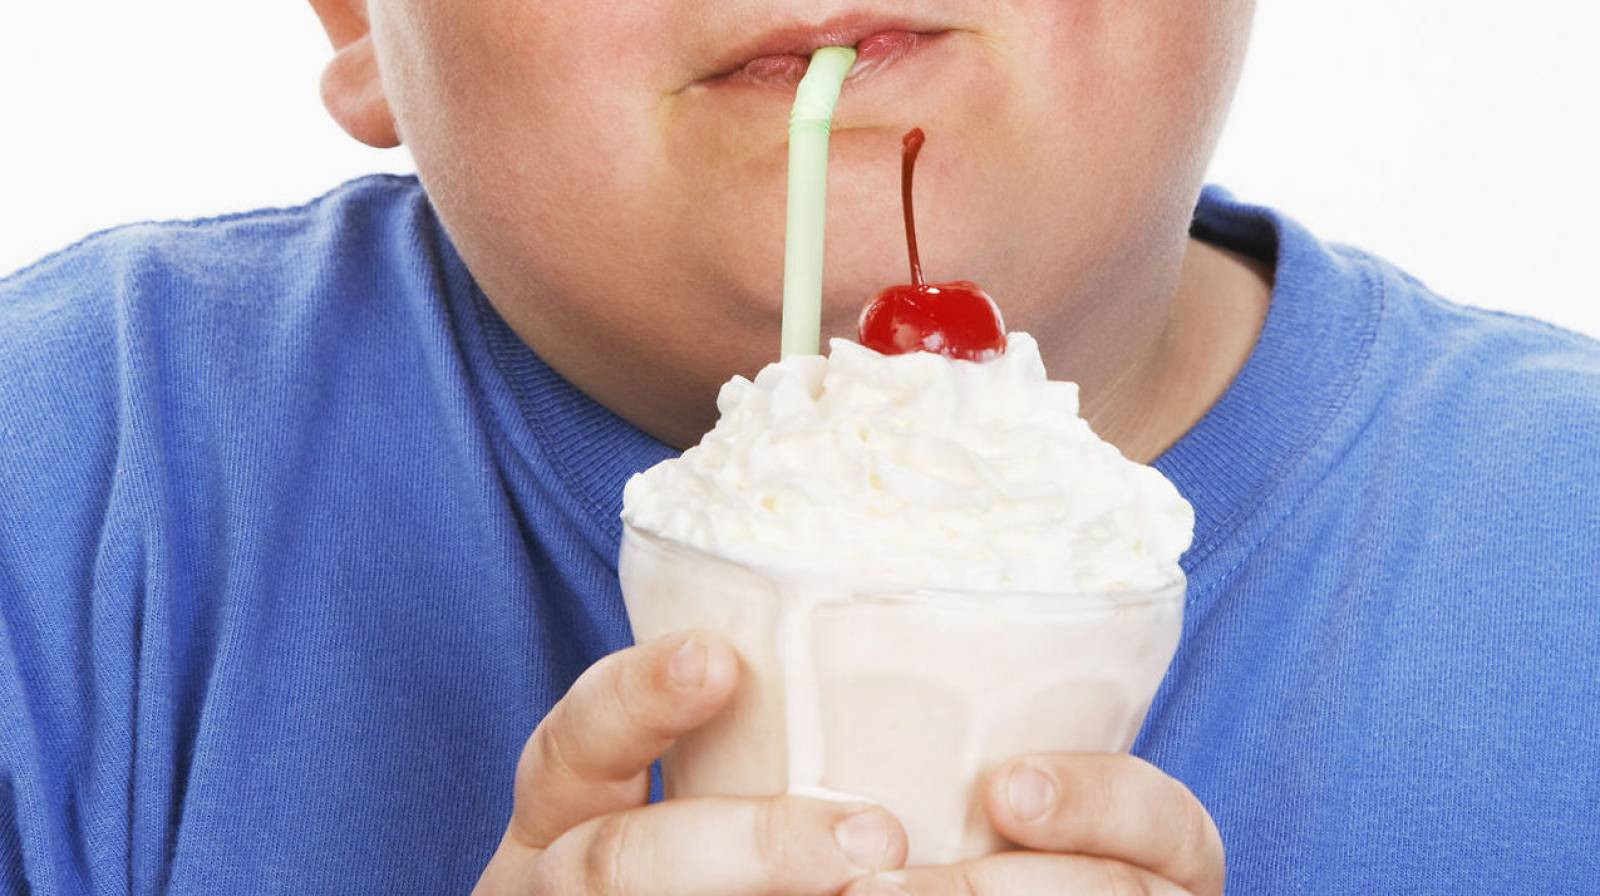 Η παιδική παχυσαρκία επηρεάζει το συκώτι στην ενήλικη ζωή